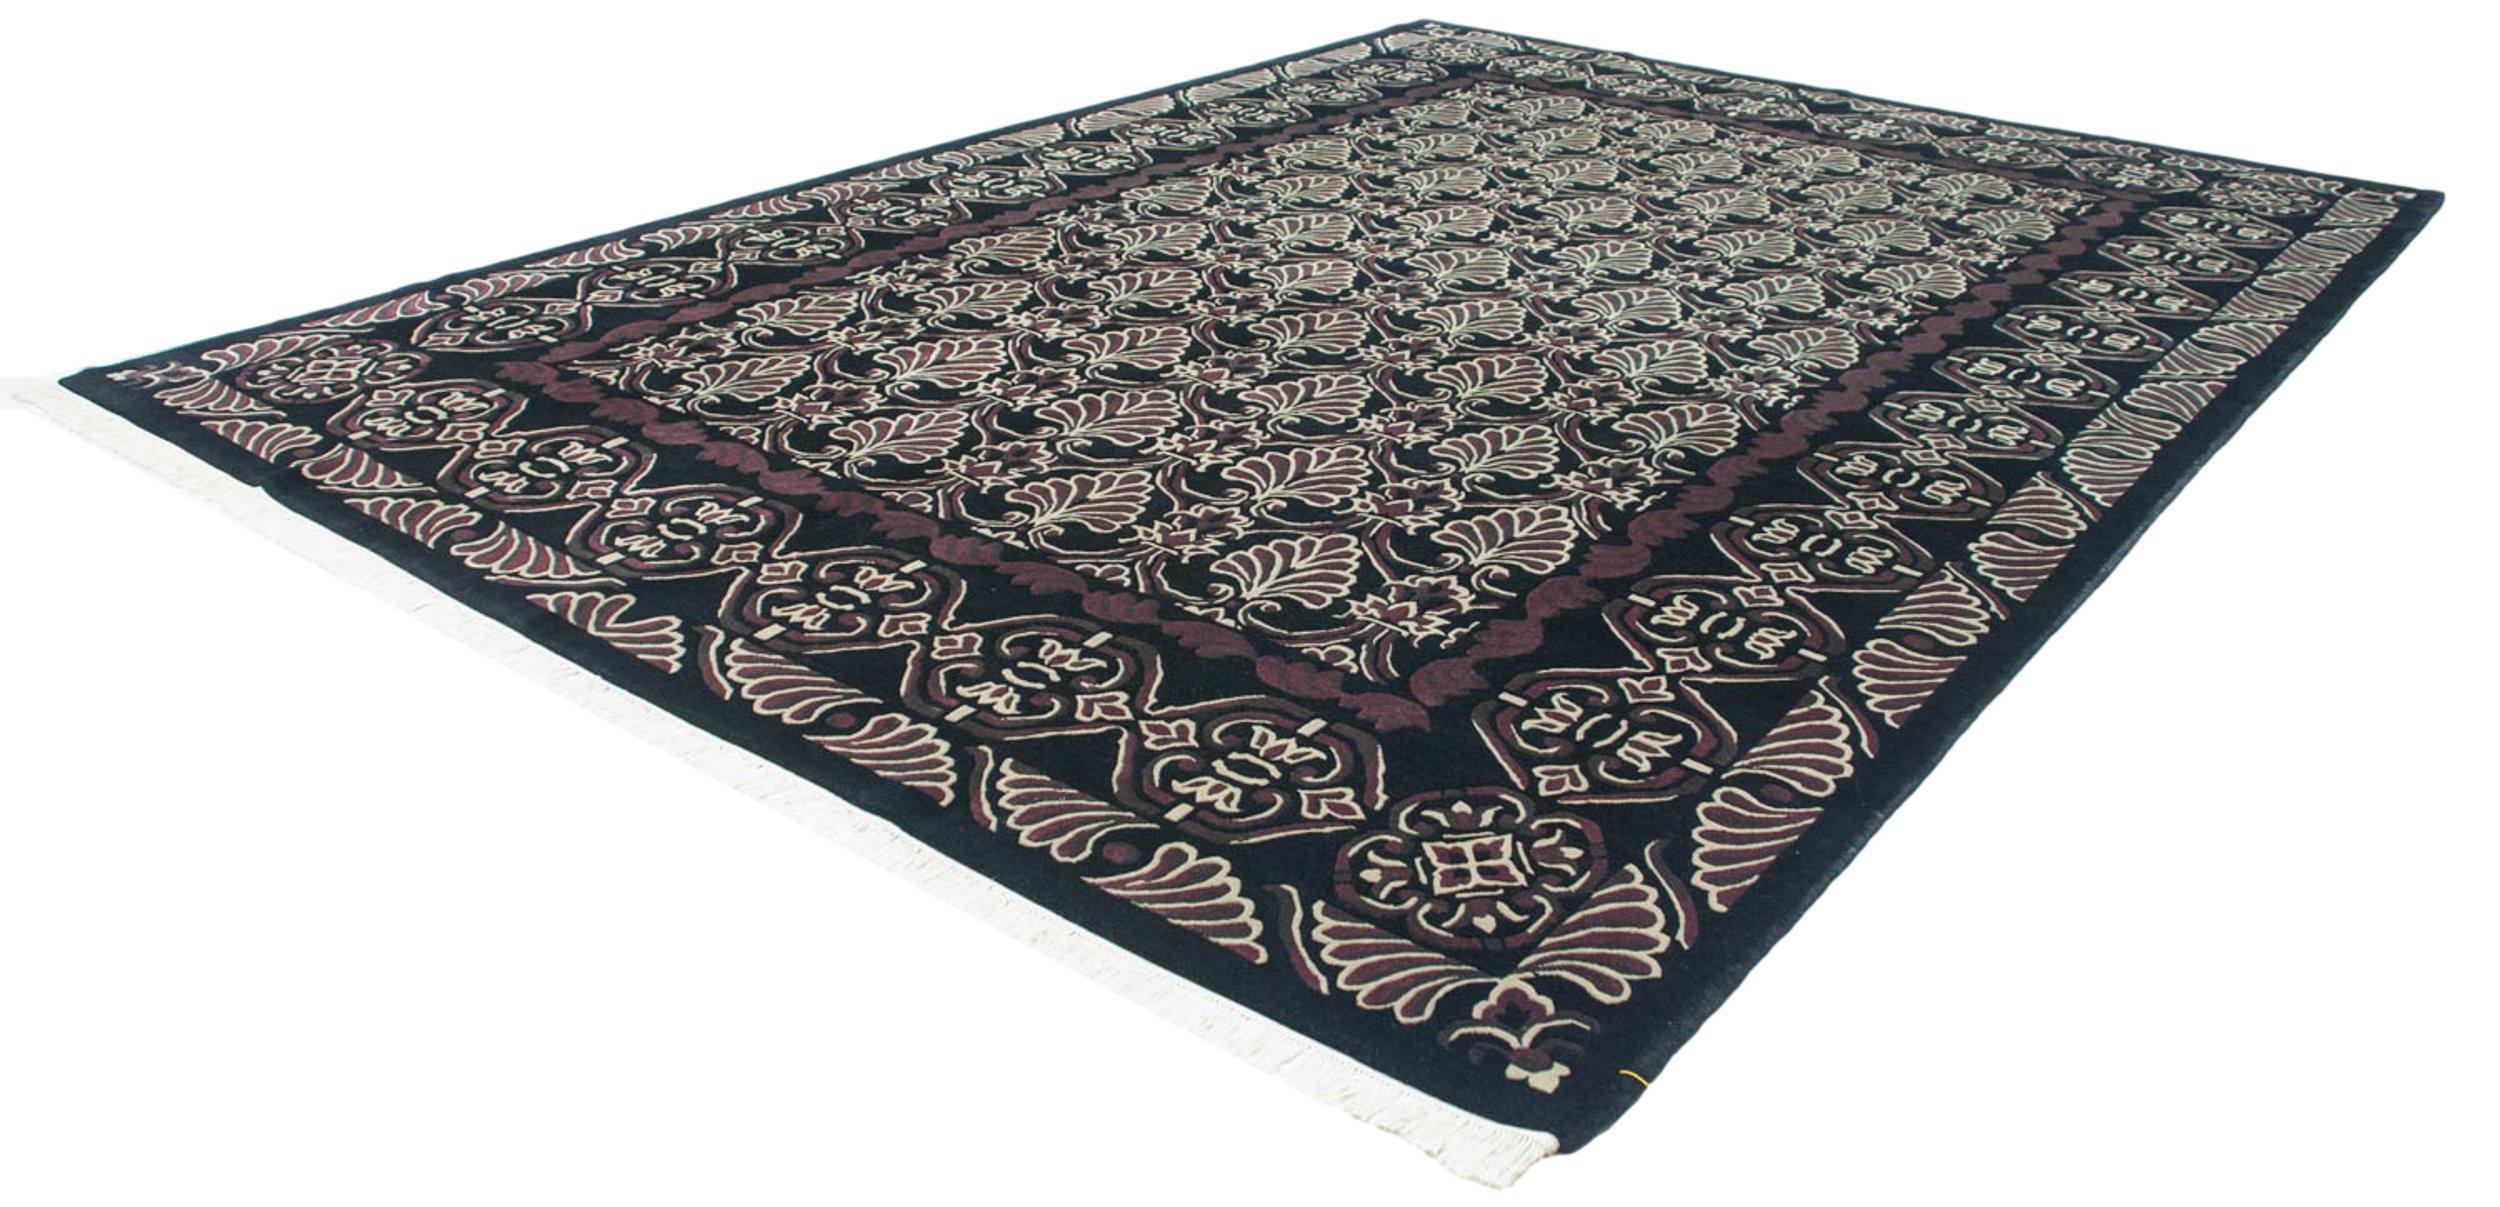 Hand-Knotted Vintage Indian Damask Design Carpet For Sale